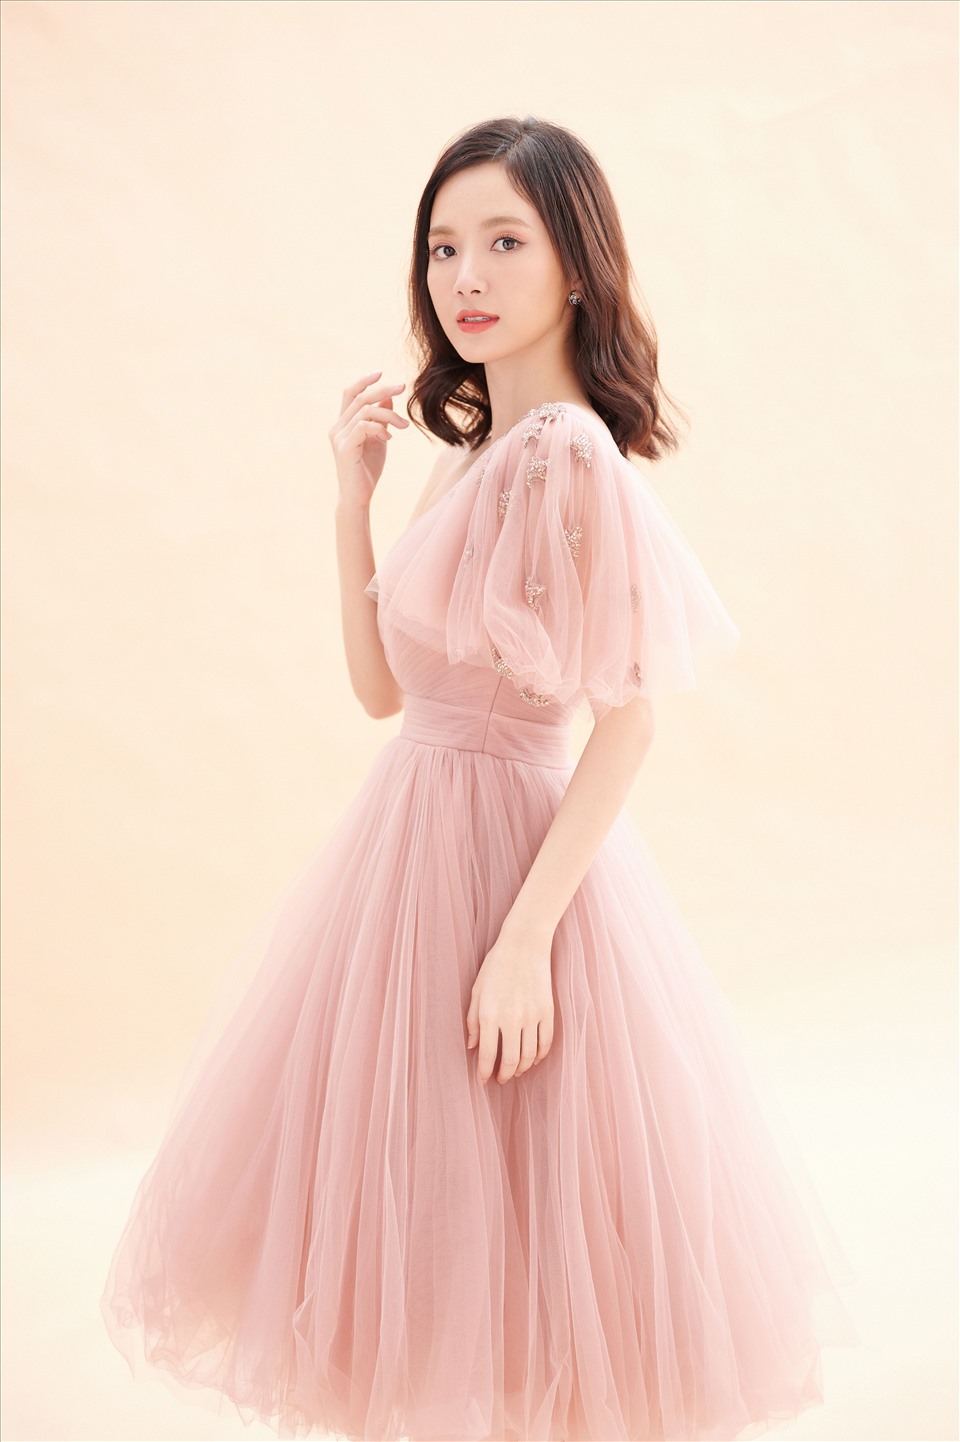 Chiếc váy đầu tiên mang gam màu hồng da trên nền vải voan nhẹ nhàng, tinh tế. Không quá nhiều điểm nhấn nhưng chính sự đơn giản trong outfit còn làm tôn cá tính riêng của người đẹp.